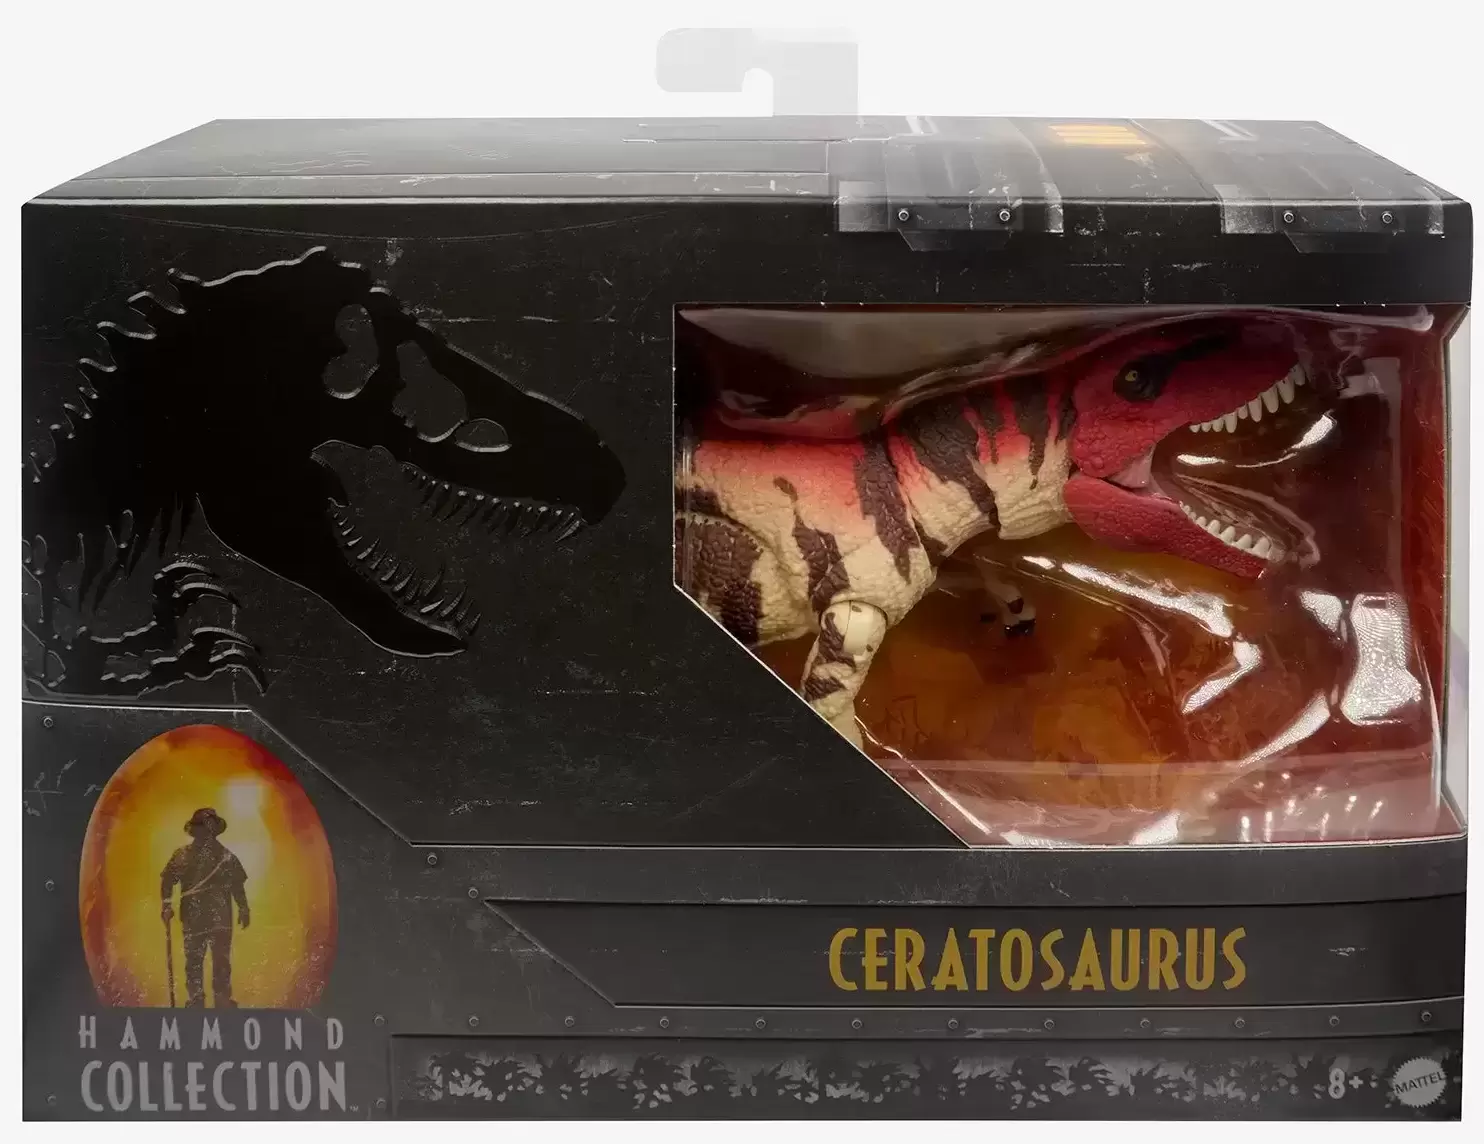 Hammond Collection - Ceratosaurus